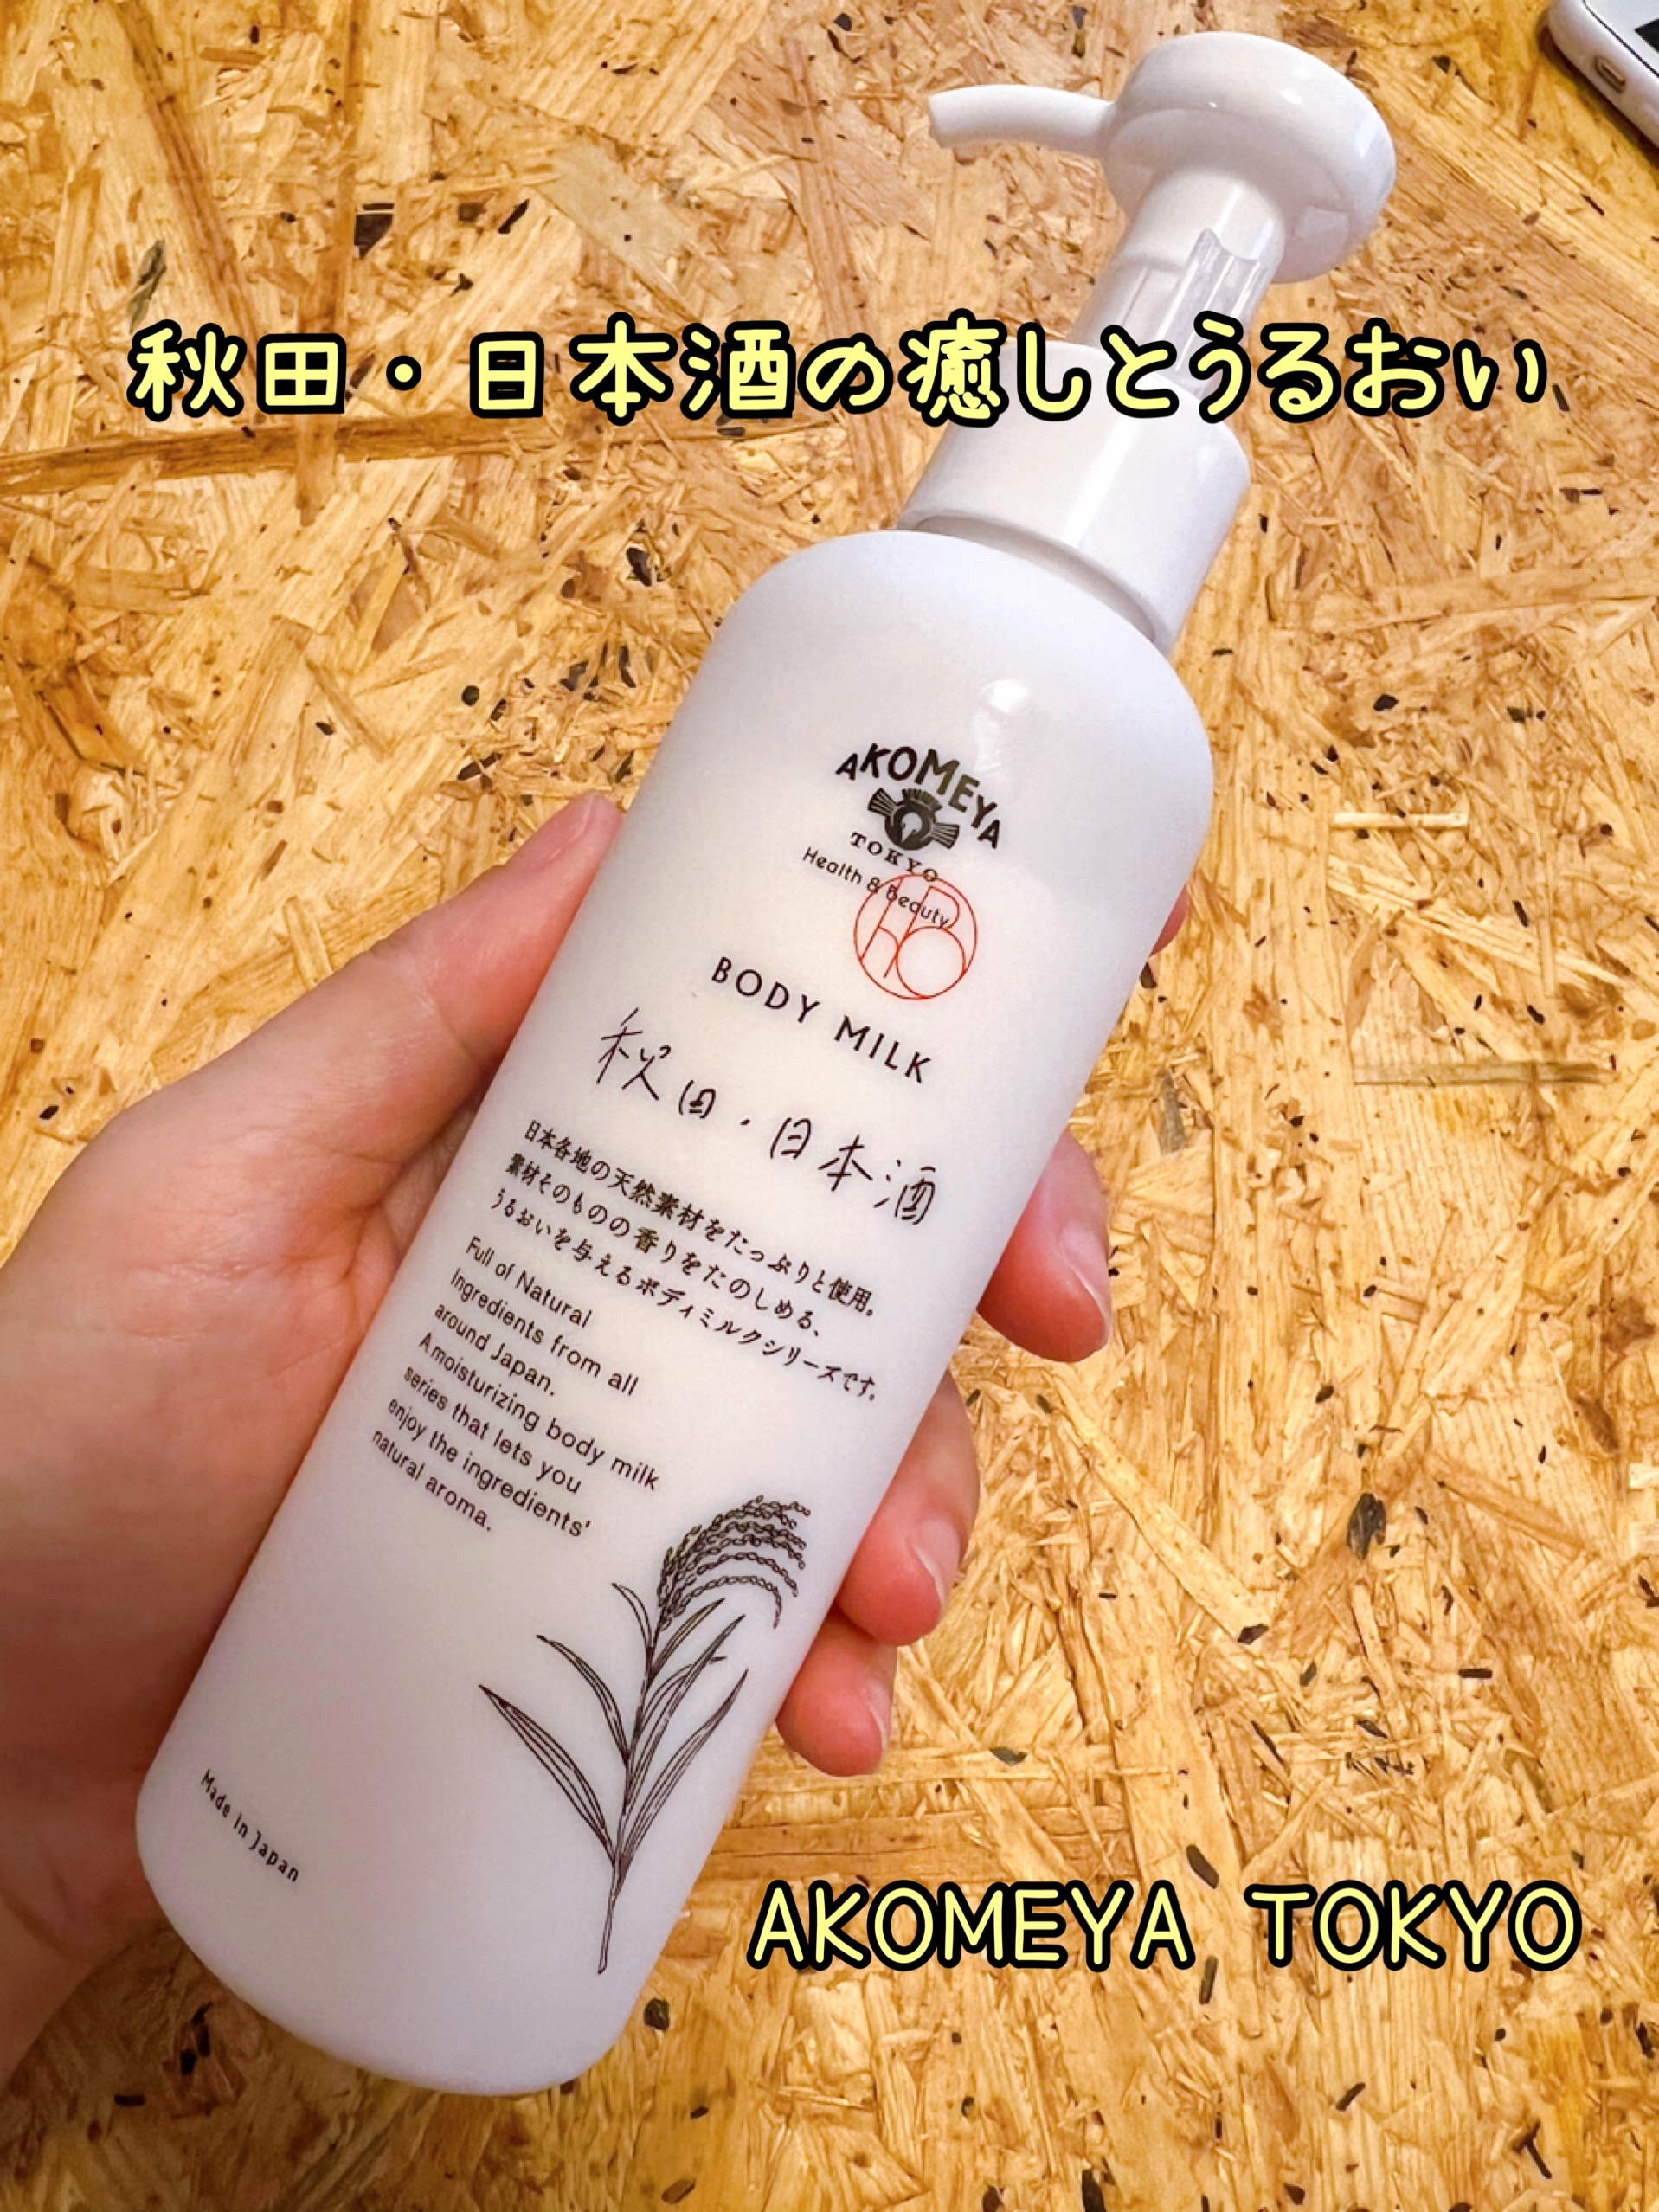 AKOMEYA TOKYO ボディミルク 秋田・日本酒の良い点・メリットに関するつくねさんの口コミ画像1